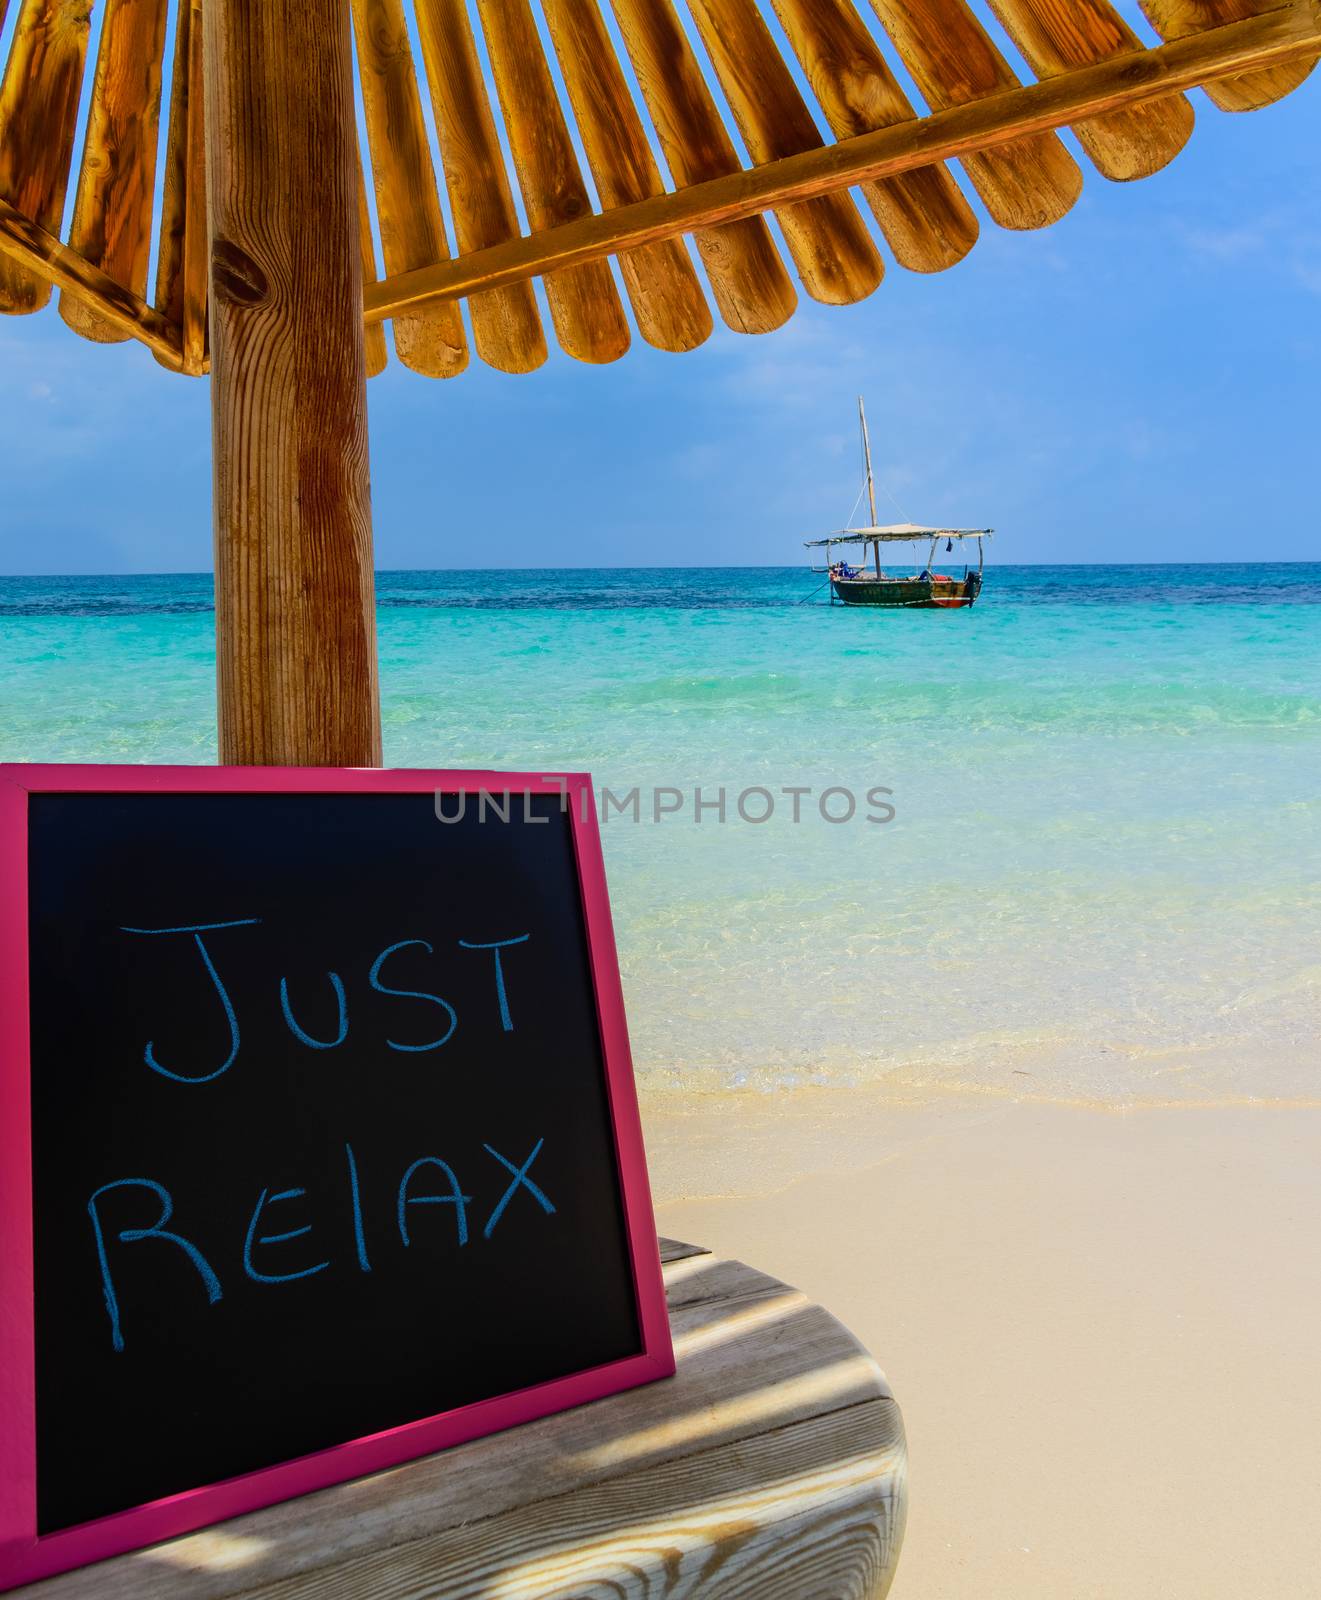 Just relax blackboard by Robertobinetti70